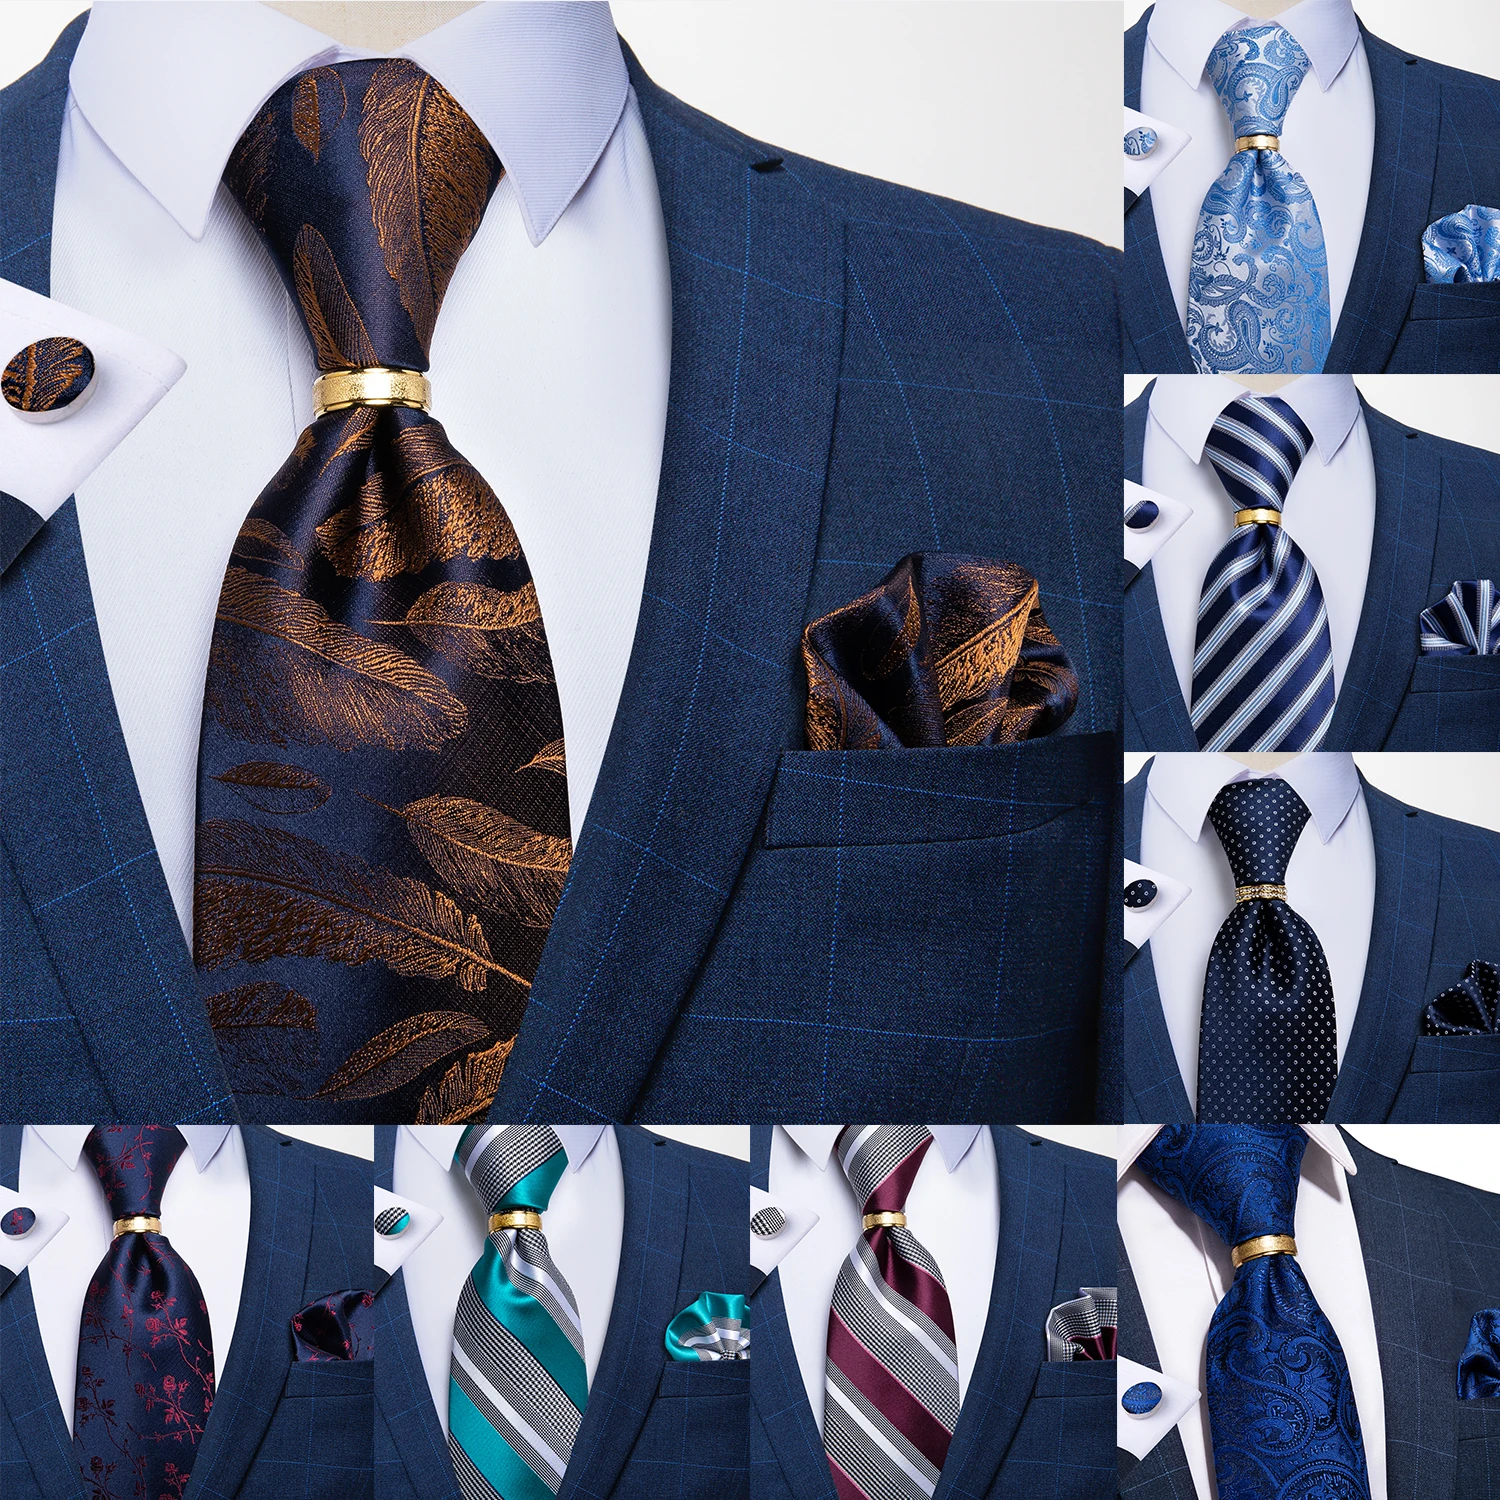 

Men Tie Navy Gold Feather Pattern Business Formal Necktie Handkerchief Cuffinks Ring Set Jacquard Woven Silk Wedding Tie DiBanGu